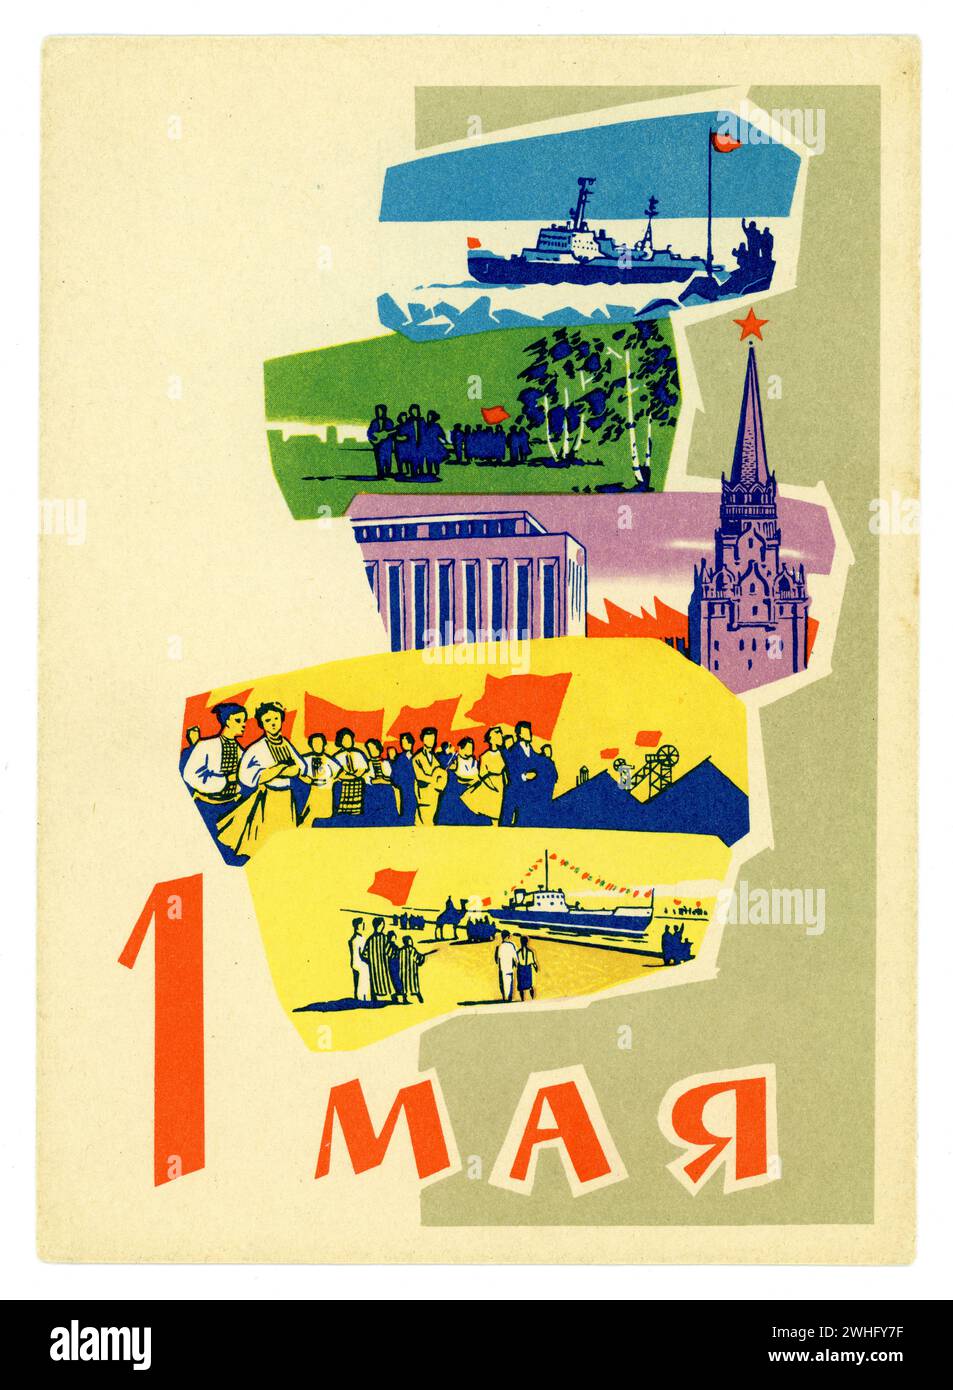 Die ursprüngliche Propagandakarte aus der Sowjetzeit der 1960er Jahre wurde für die Feierlichkeiten zum Tag der Arbeit veröffentlicht. Dieser Feiertag wird auch als der Tag der Internationalen Solidarität der Arbeiter aus der ehemaligen Sowjetunion bezeichnet. Es gibt Illustrationen im typischen Stil der Sowjetzeit des Kremls, der Schifffahrt und Märsche mit der roten Flagge. Auf der Rückseite befindet sich eine gedruckte Abbildung einer Briefmarke mit dem Datum 1. Mai 1962. Stockfoto